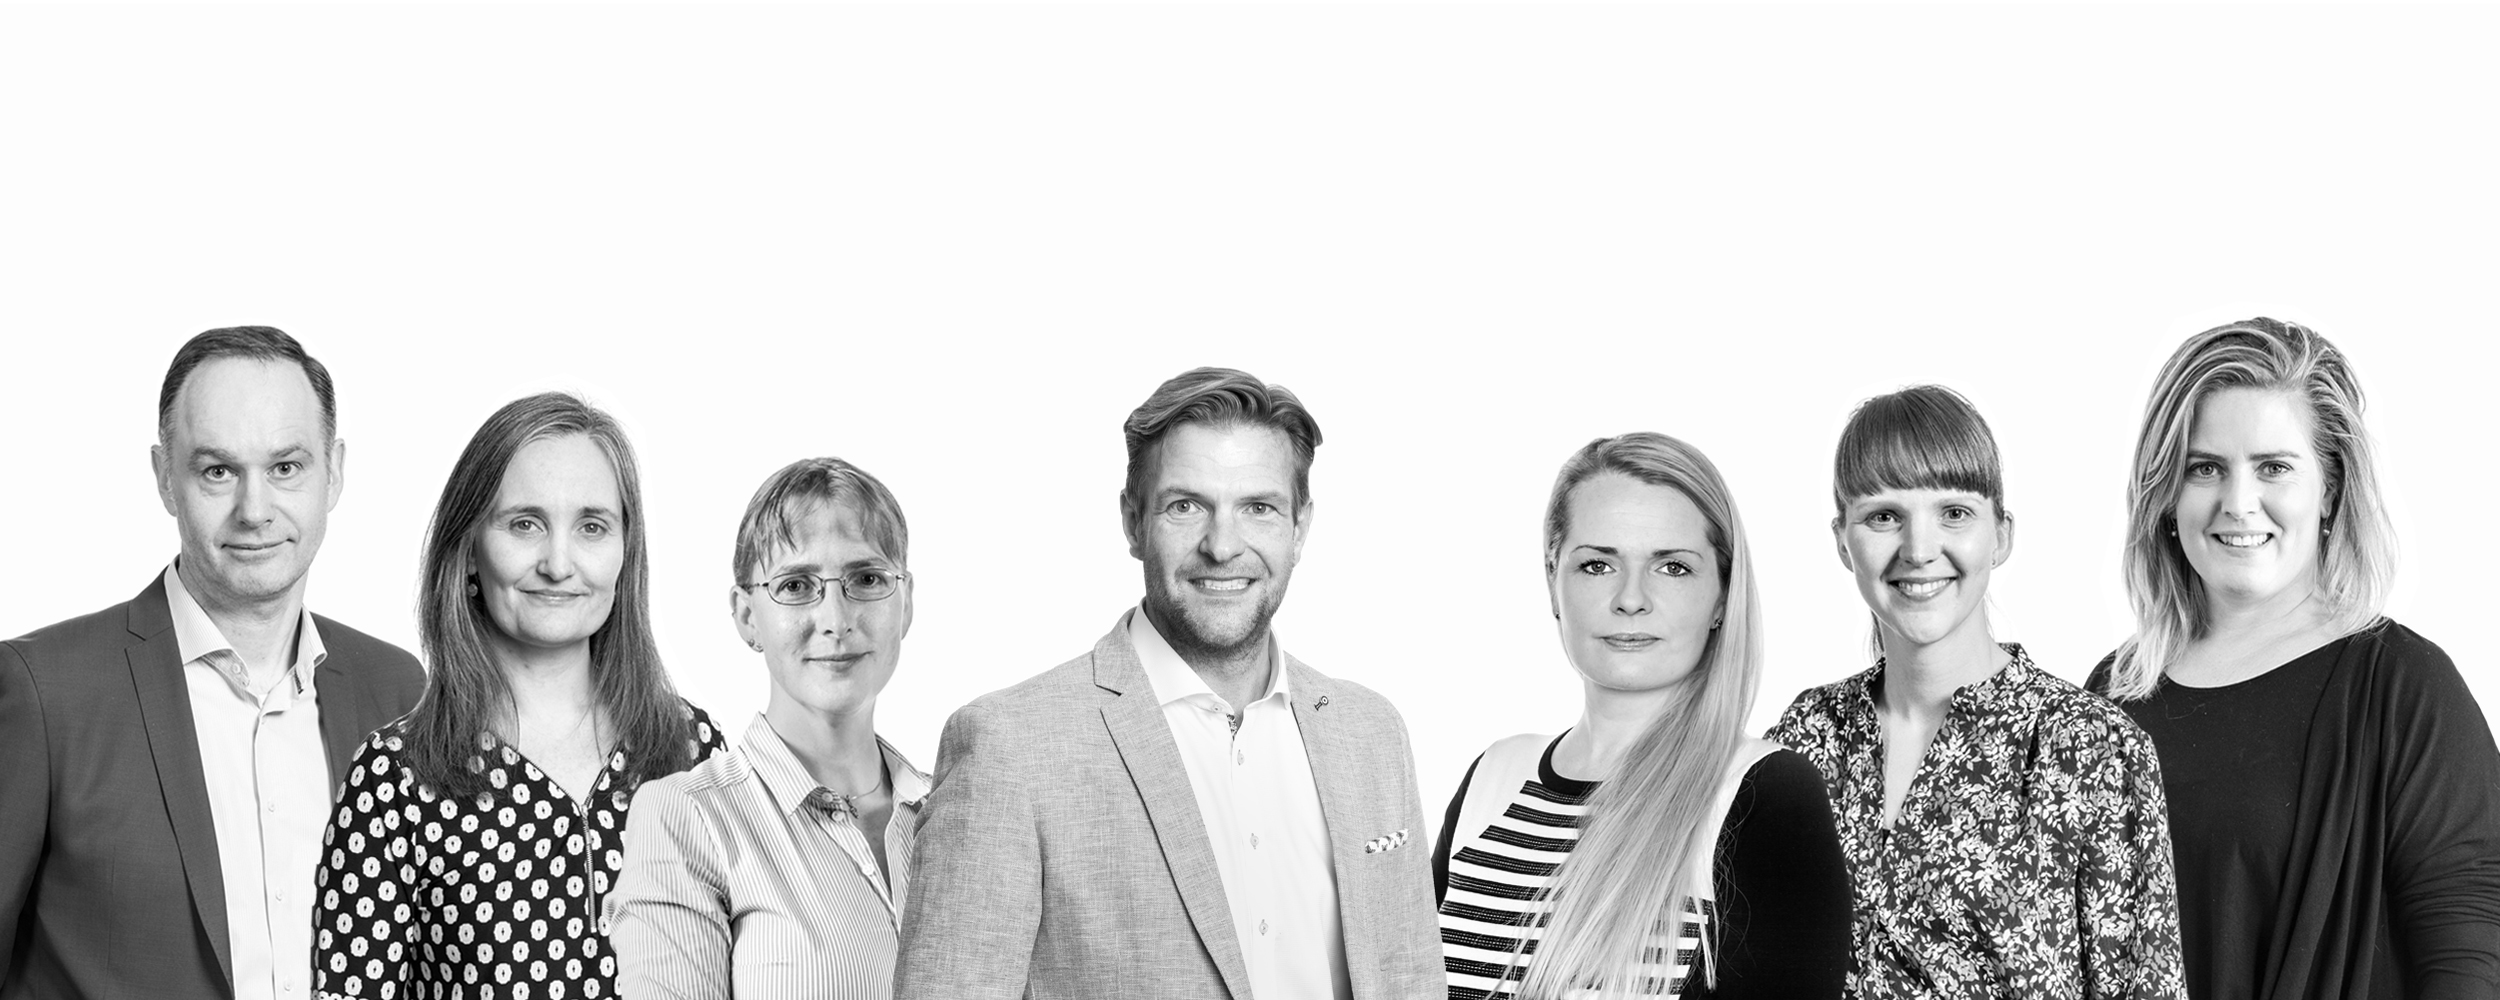 Tvangsfjernelse - Danmarks bedste advokater